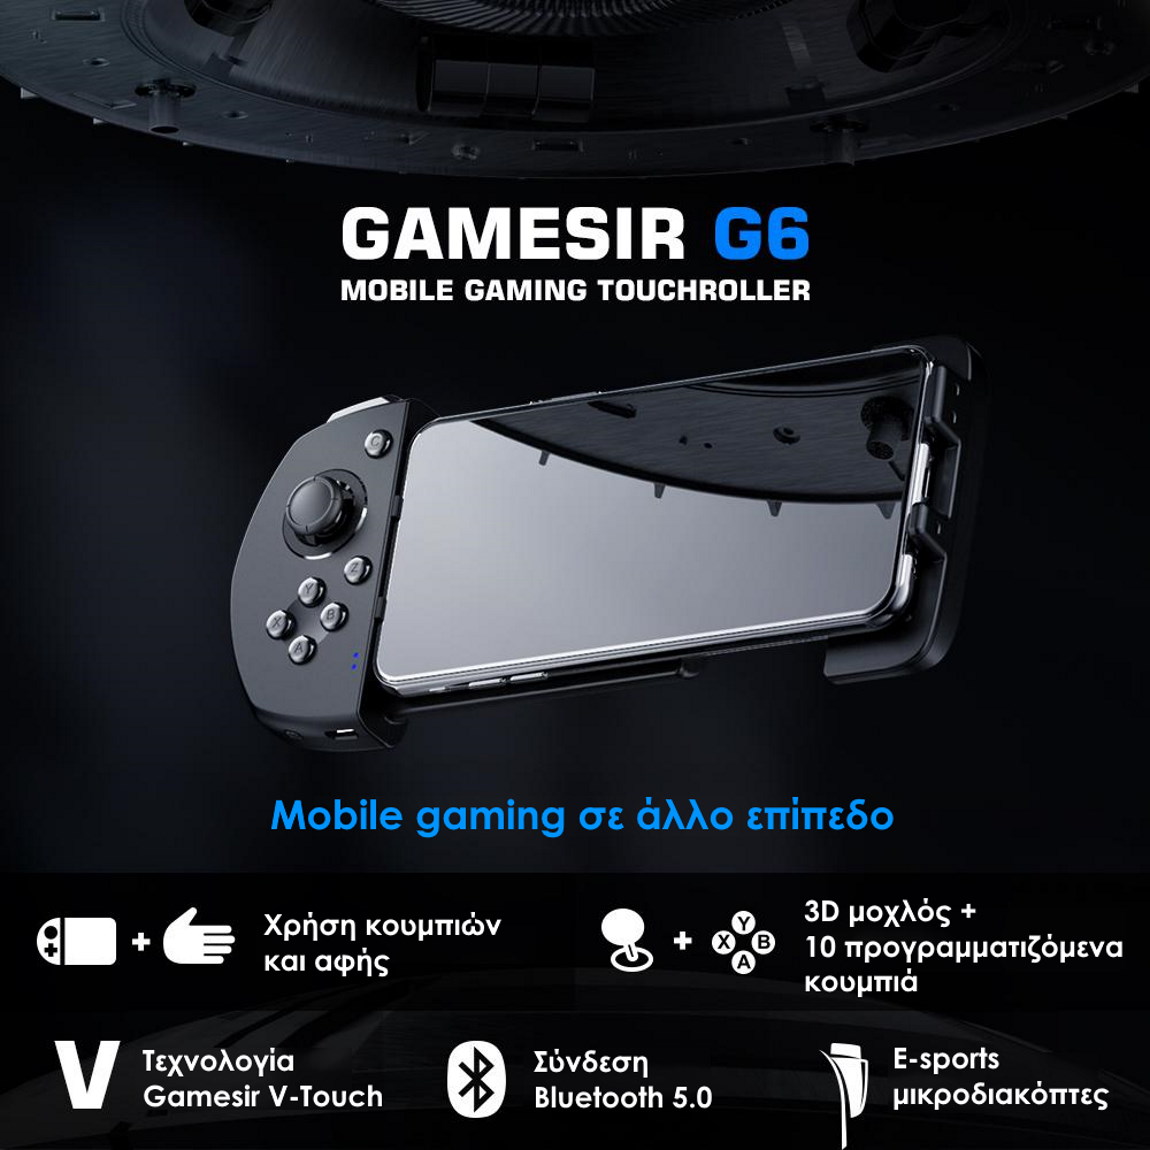 ασύρματο Gamesir G6 Touchroller